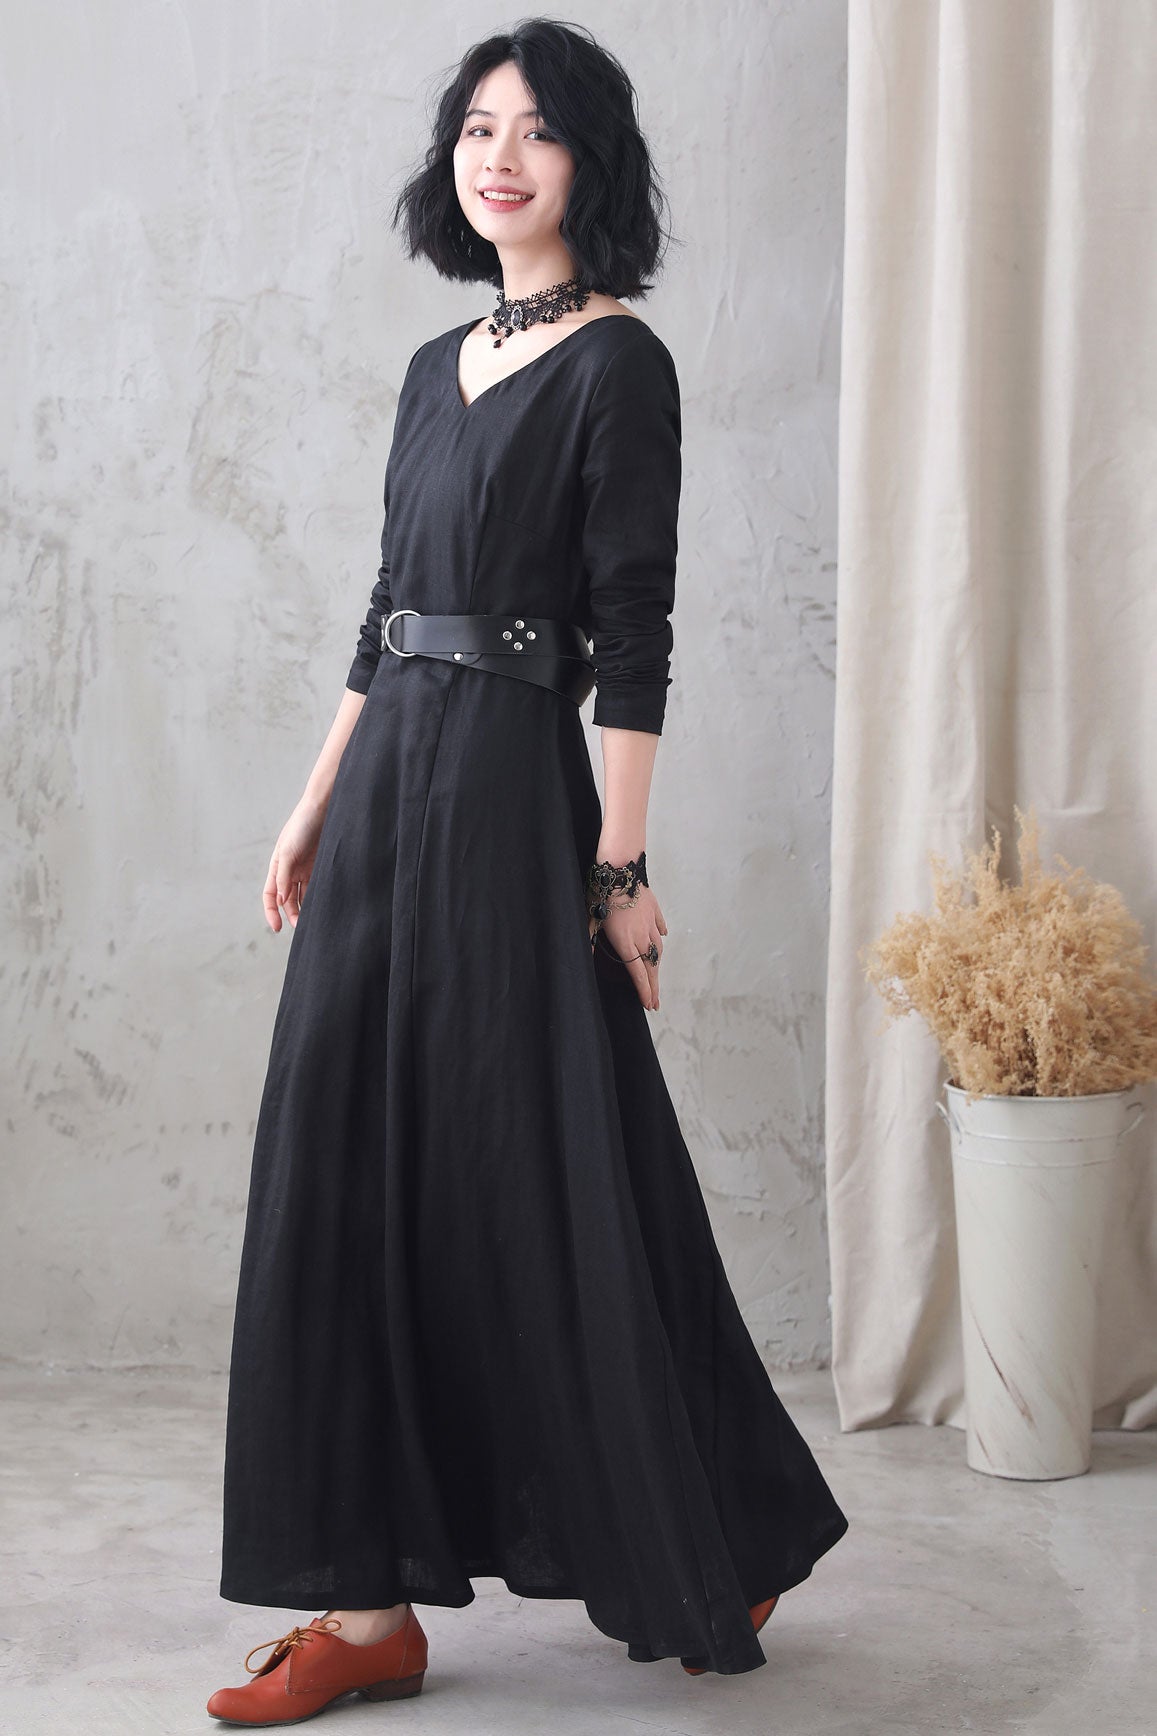 Black Vintage Inspired Mediveal Long Maxi Linen Dress 3332